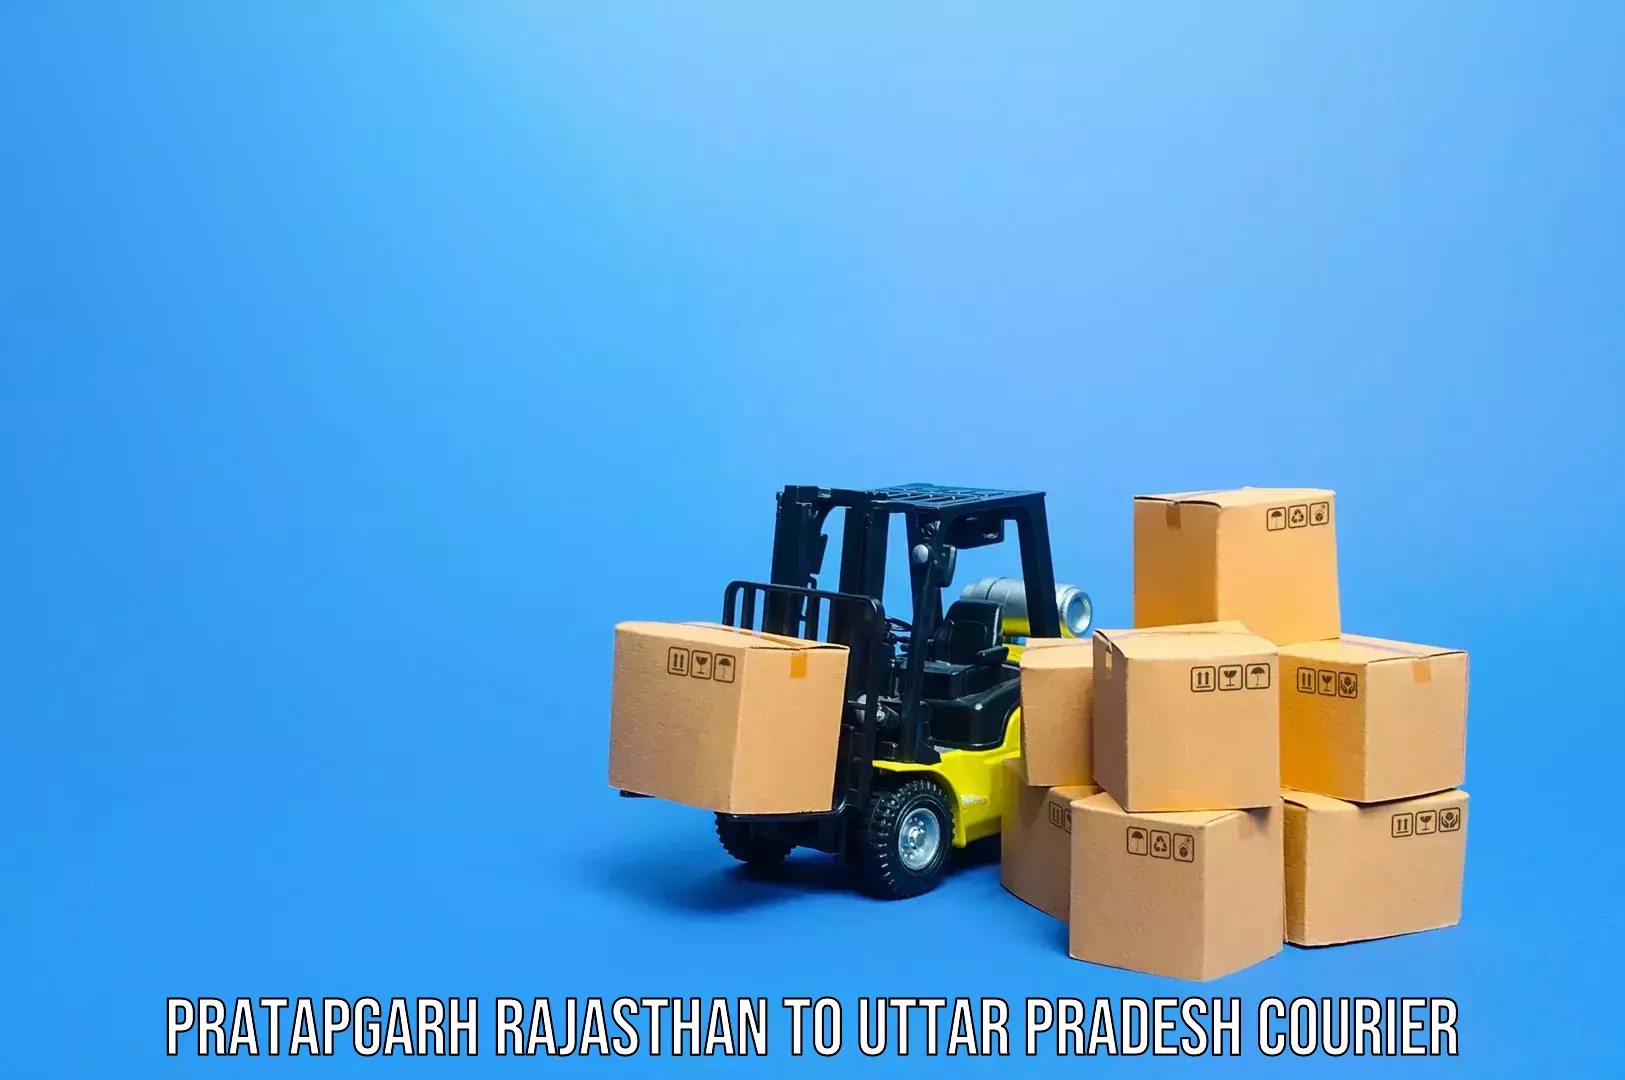 Luggage shipping service Pratapgarh Rajasthan to Parora